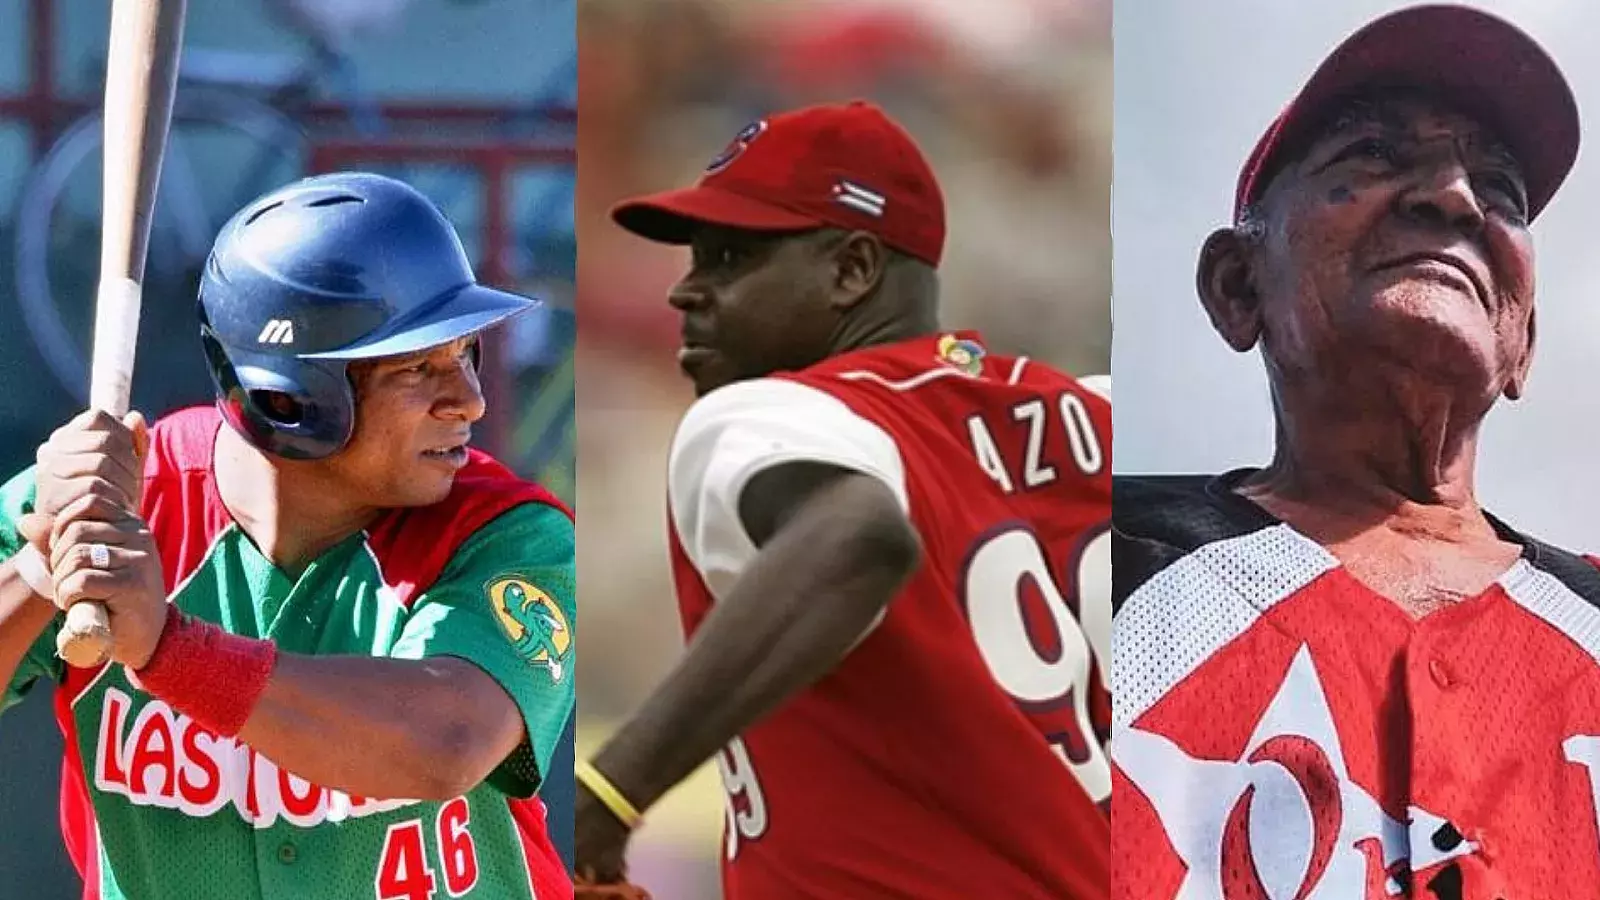 Algunos de los peloteros exaltados al Salón de la Fama deñ béisbol cubano